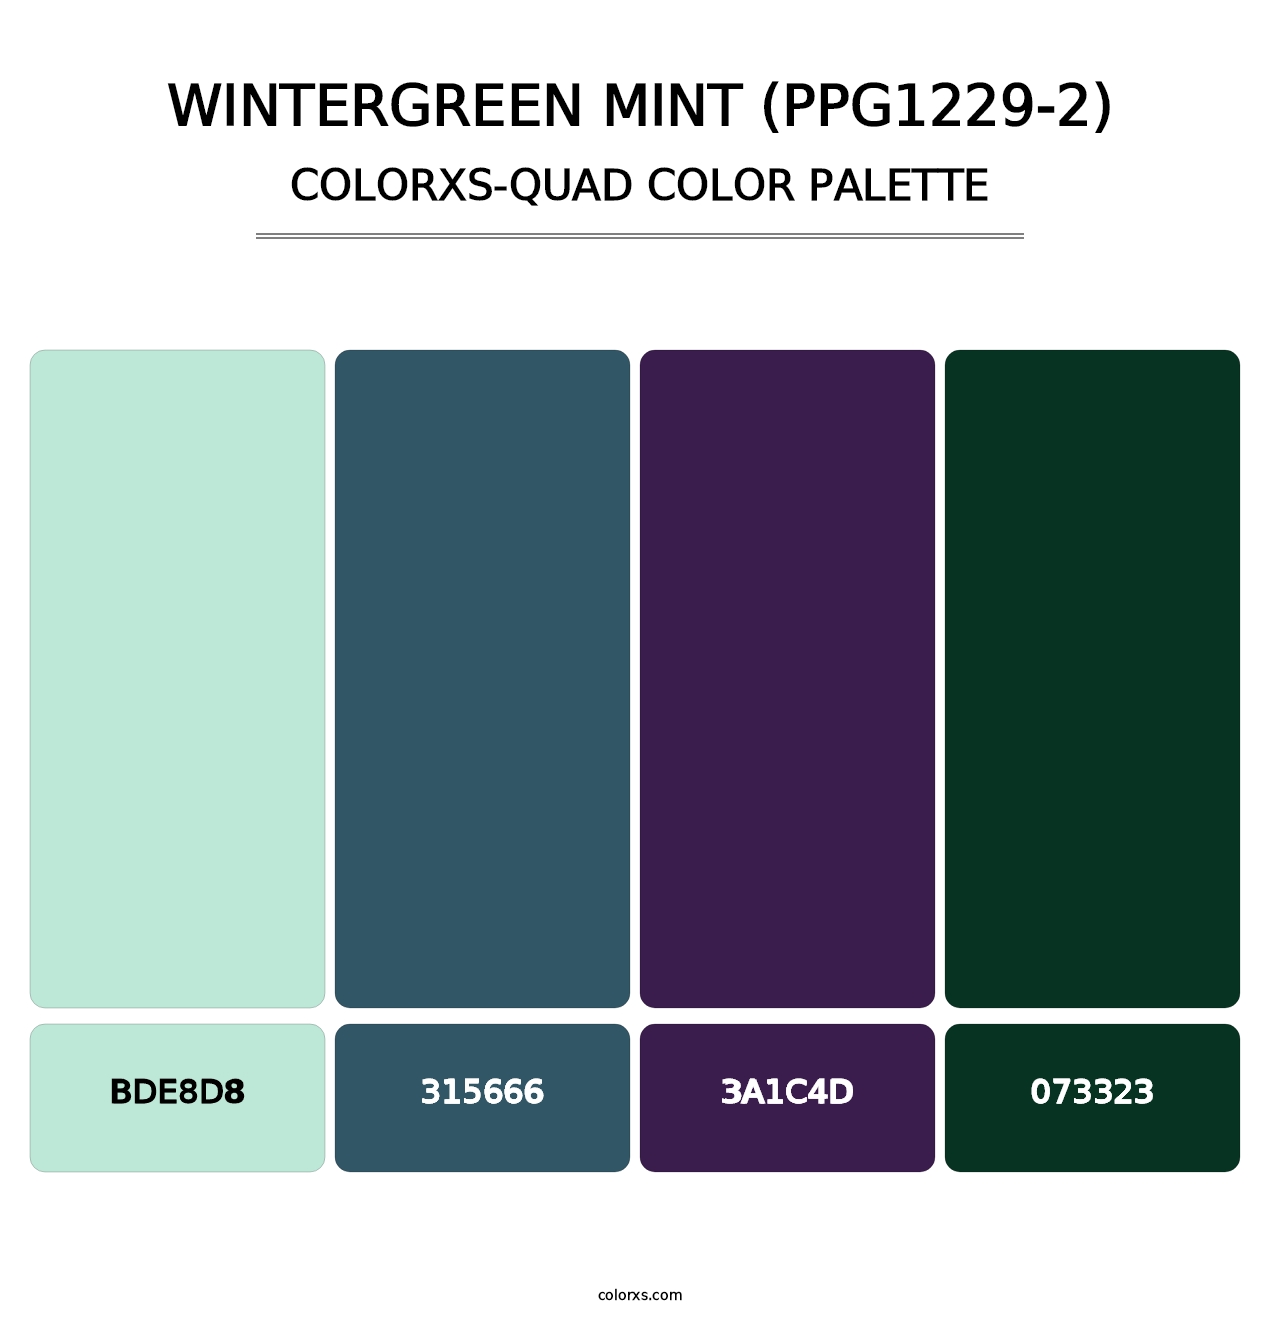 Wintergreen Mint (PPG1229-2) - Colorxs Quad Palette